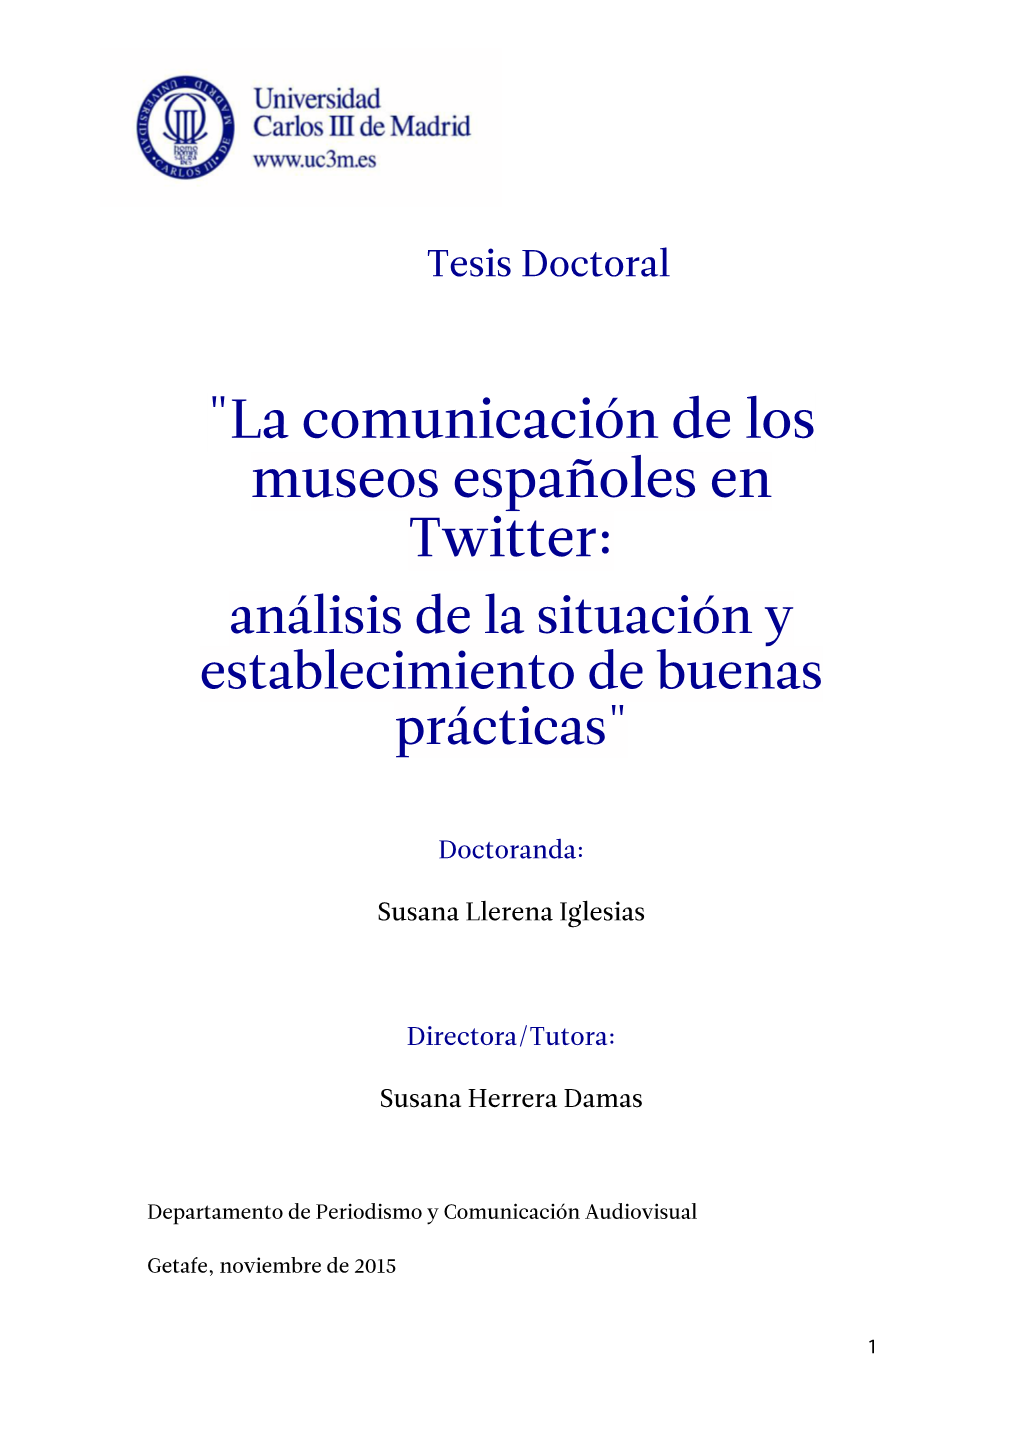 La Comunicación De Los Museos Españoles En Twitter: Análisis De La Situación Y Establecimiento De Buenas Prácticas"